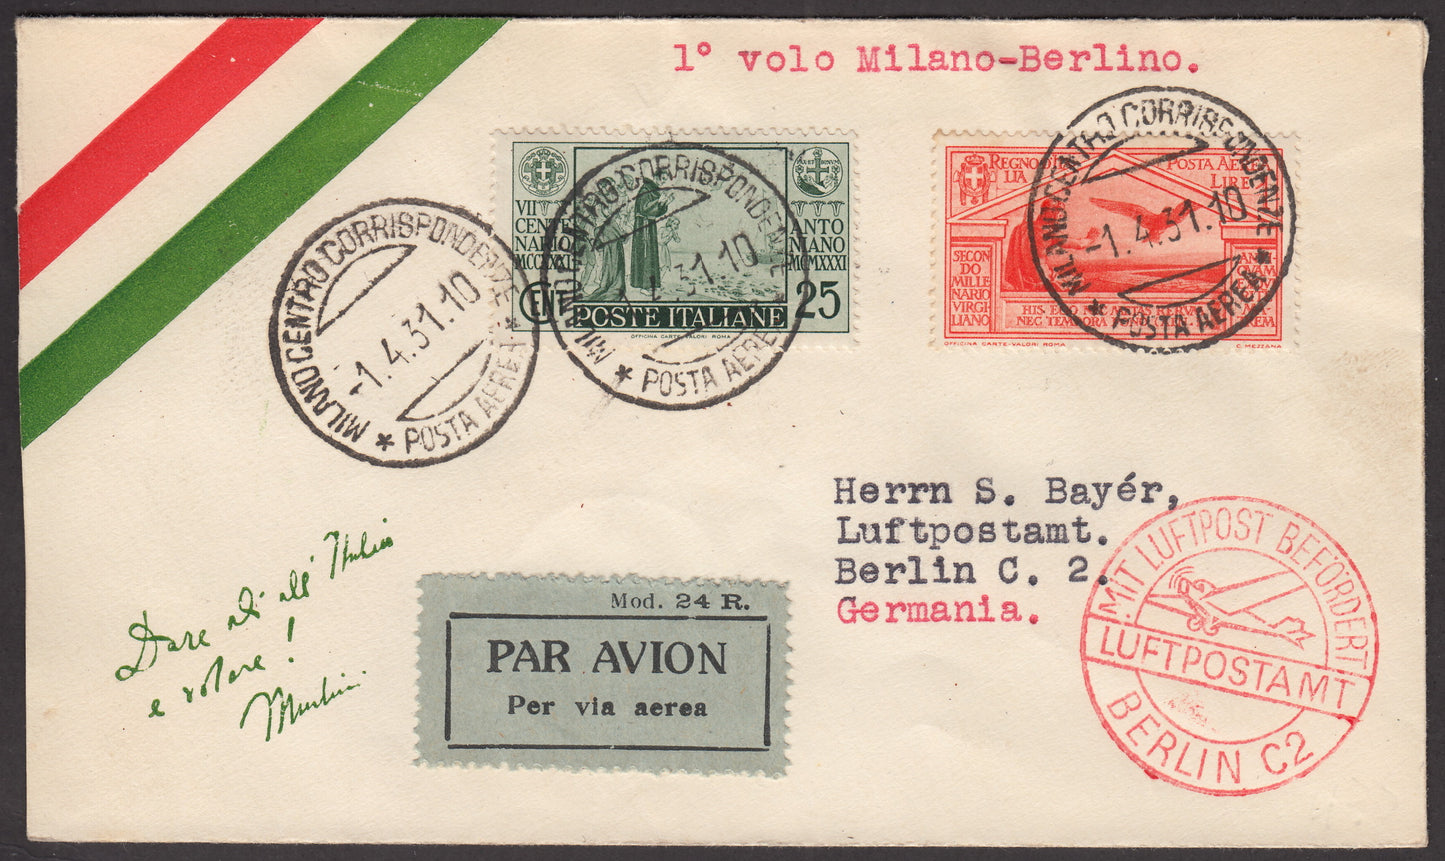 1931 - Primo volo Milano - Berlino 1/4/31 affrancato con S. Antonio c. 25 verde + Virgilio P.A. L. 1 arancio (293 + A22)